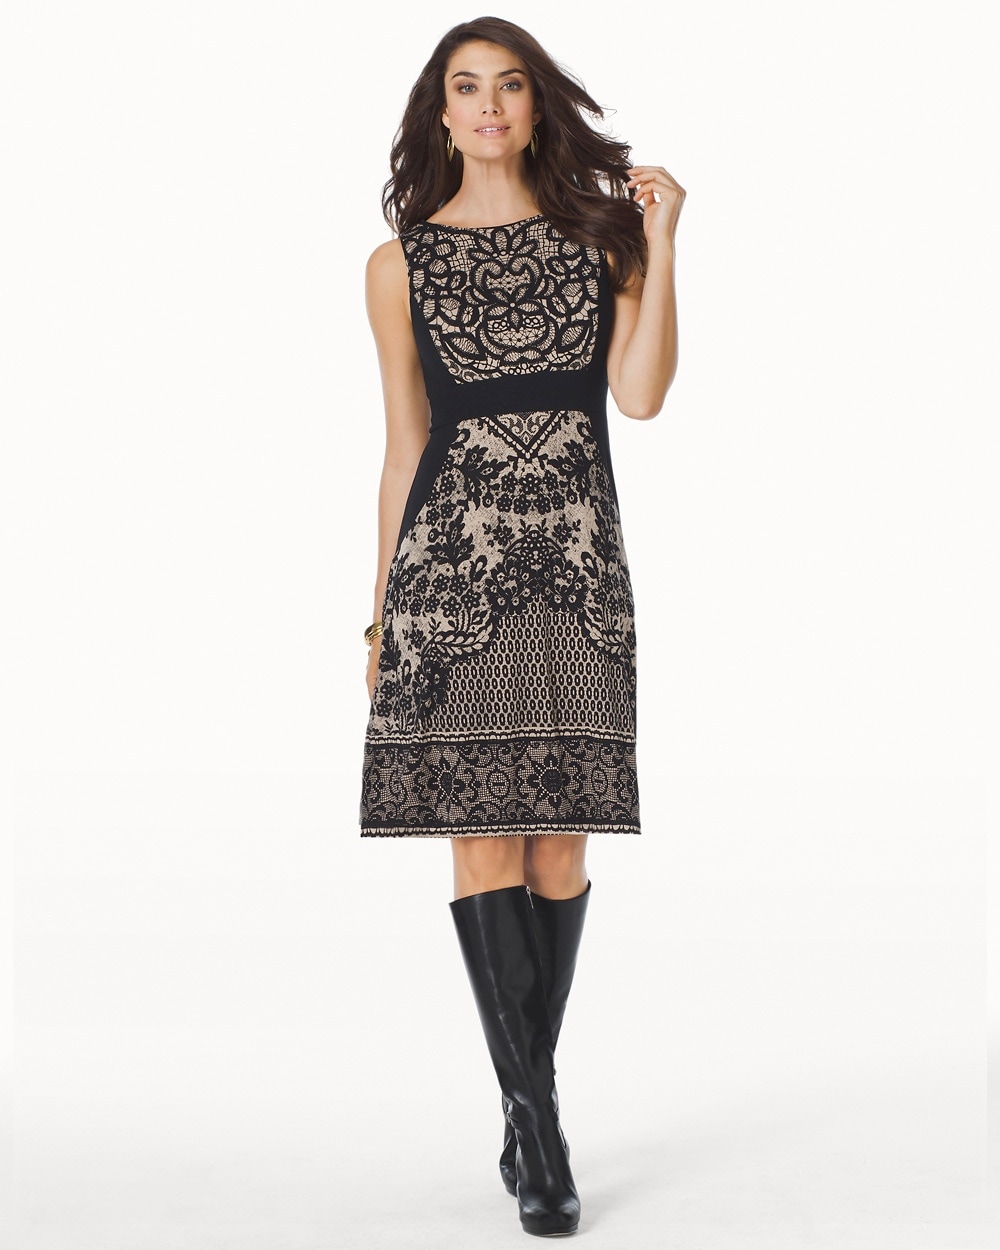 Sleeveless A-line Short Dress Crochet Lace Gold